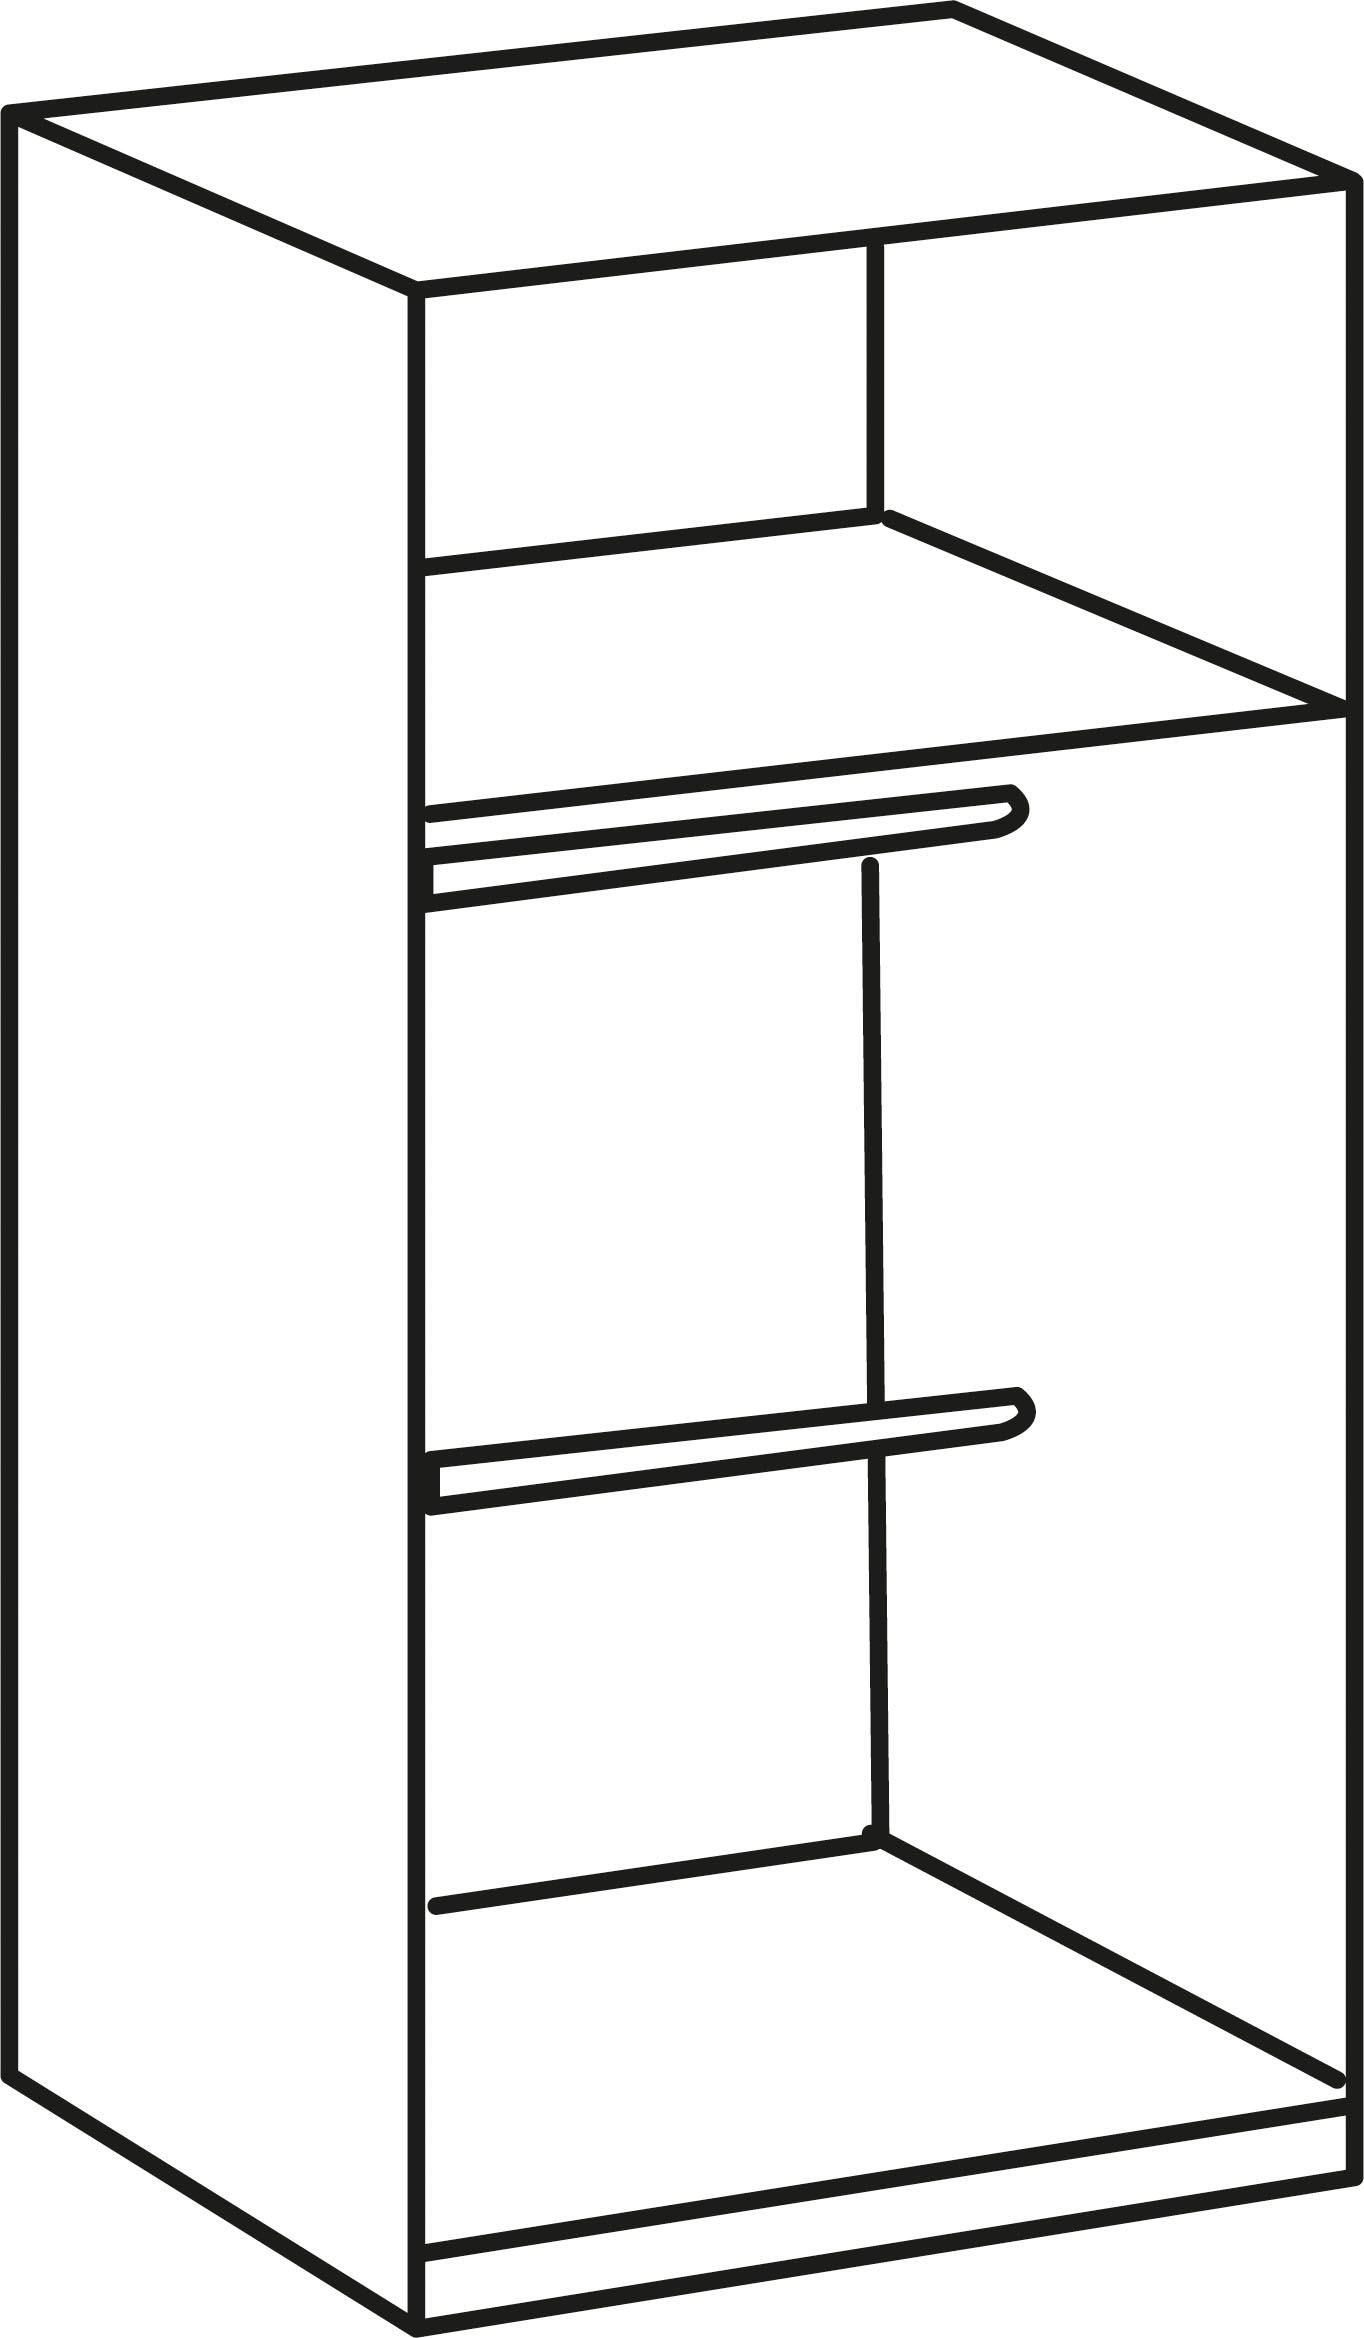 Wimex Drehtürenschrank »Tromo«, mit Hochglanz-Fronten, chromfarbene Leisten und Griffe, 90cm breit